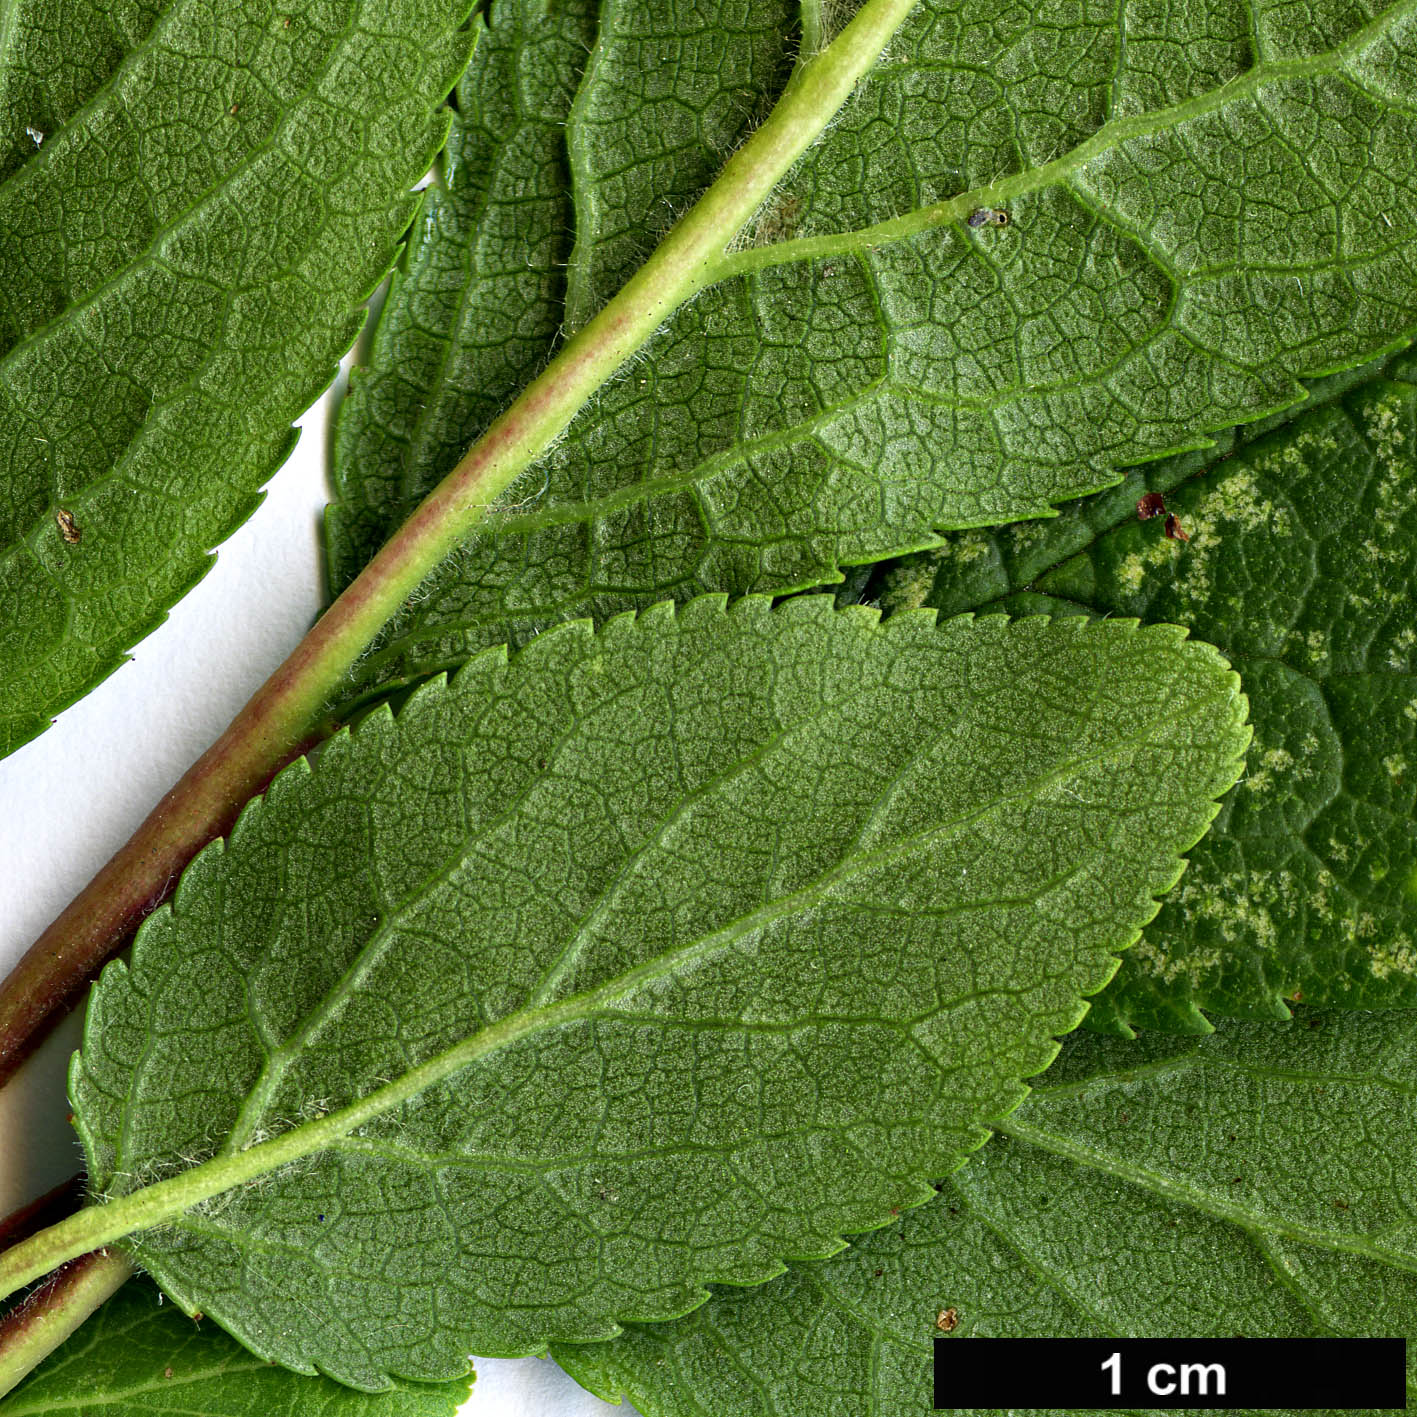 High resolution image: Family: Rosaceae - Genus: Prunus - Taxon: domestica - SpeciesSub: subsp. insititia 'Delma'